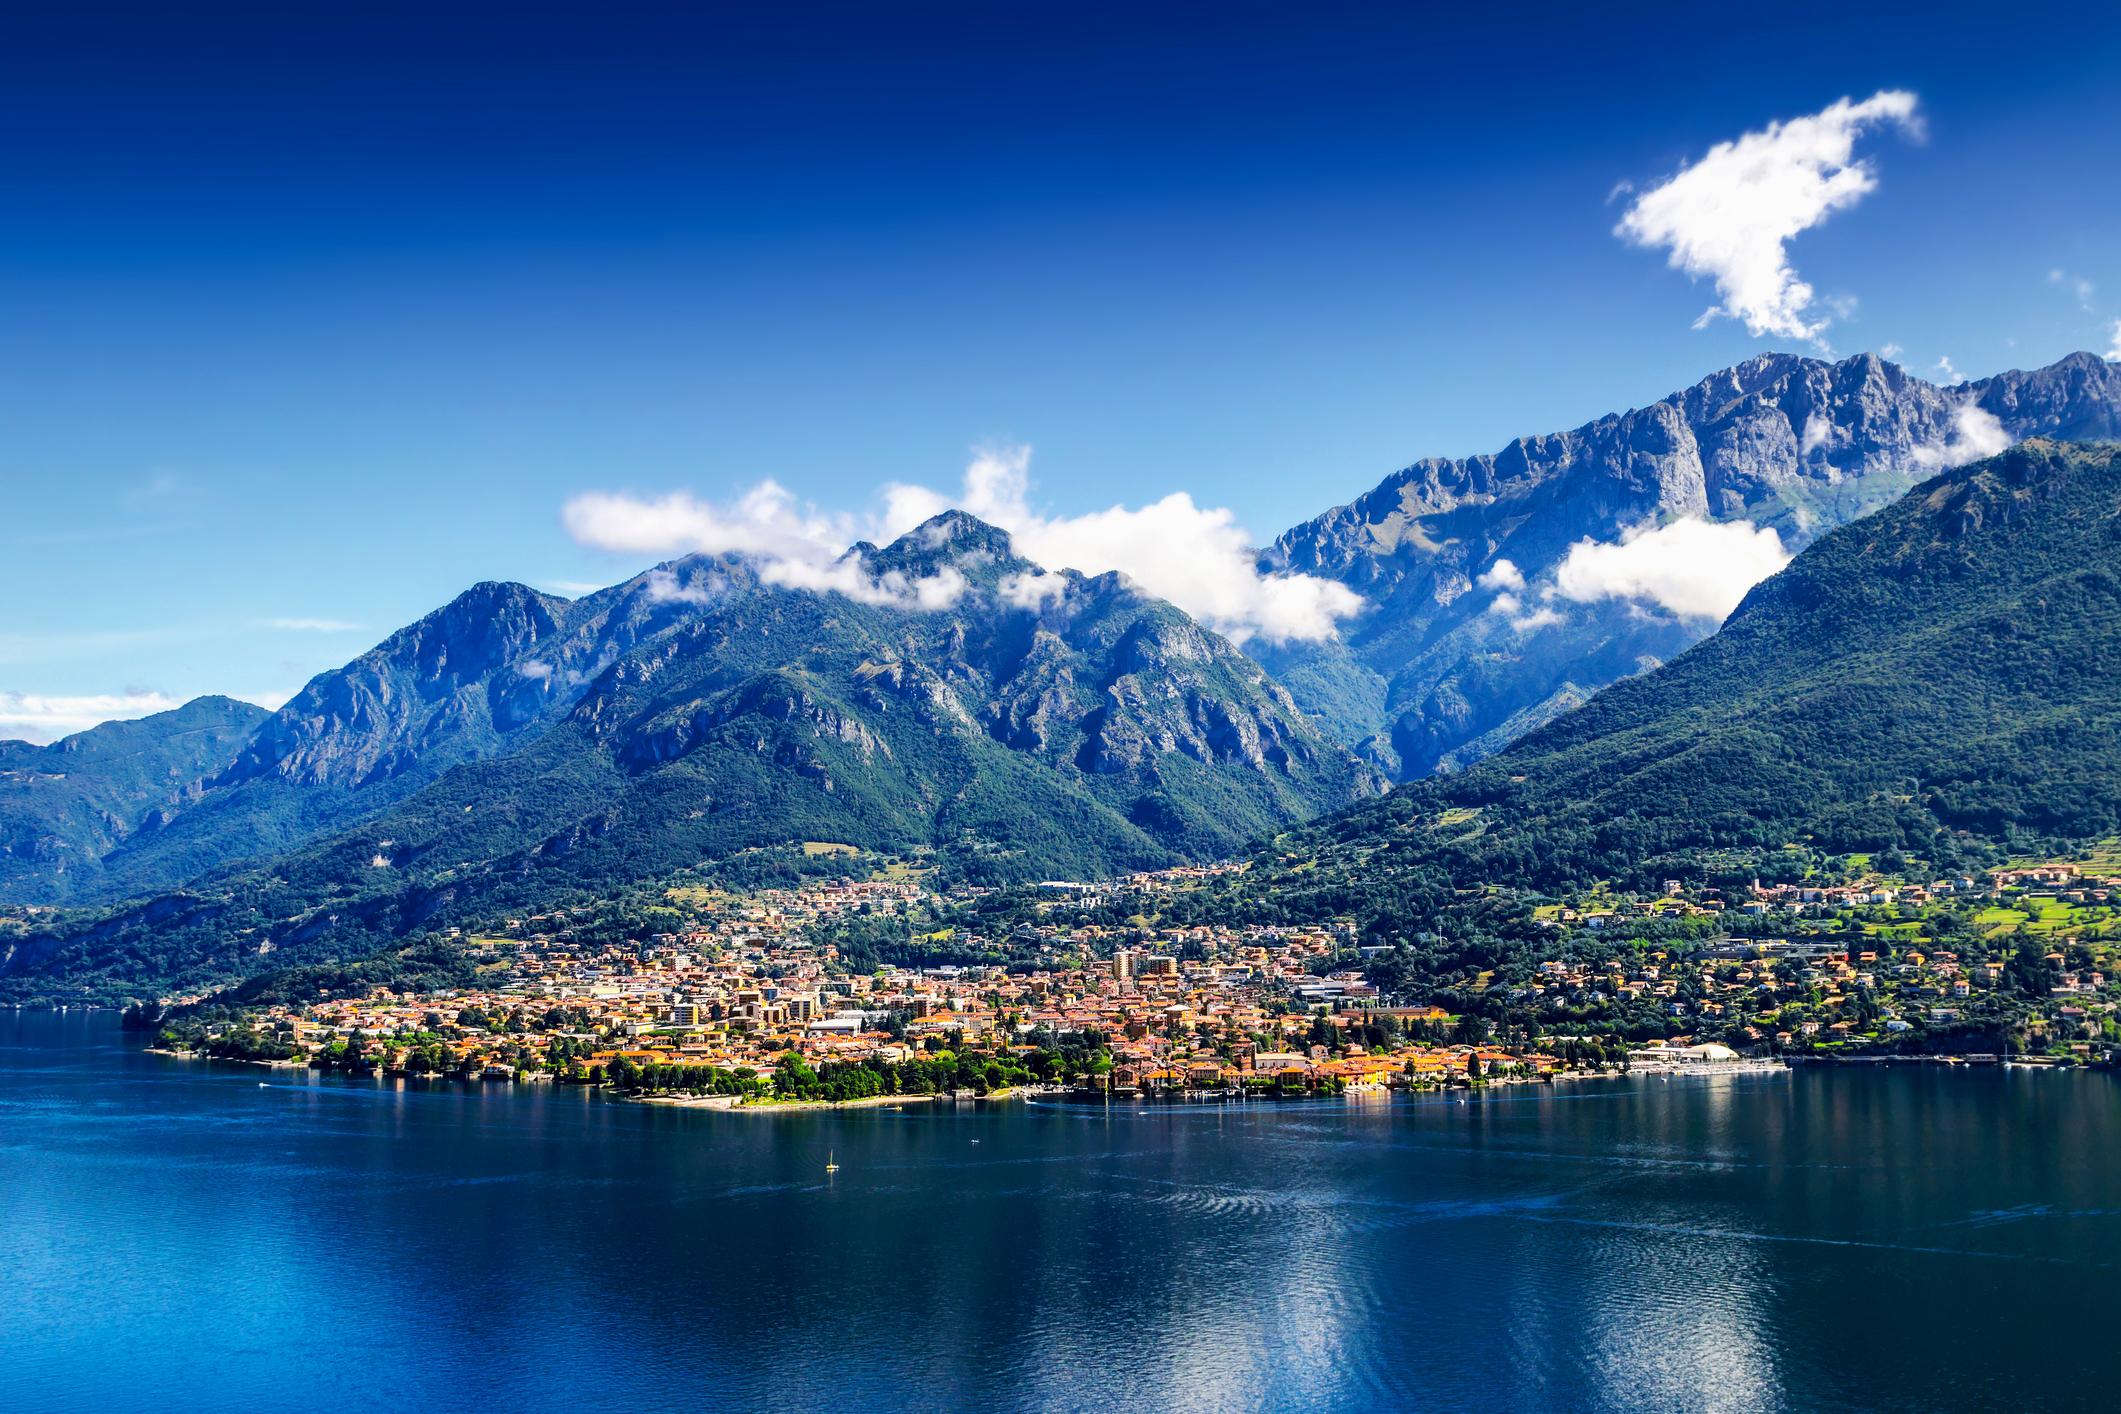 A view of the small town of Mandello del Lario, on Lake Como, Italy